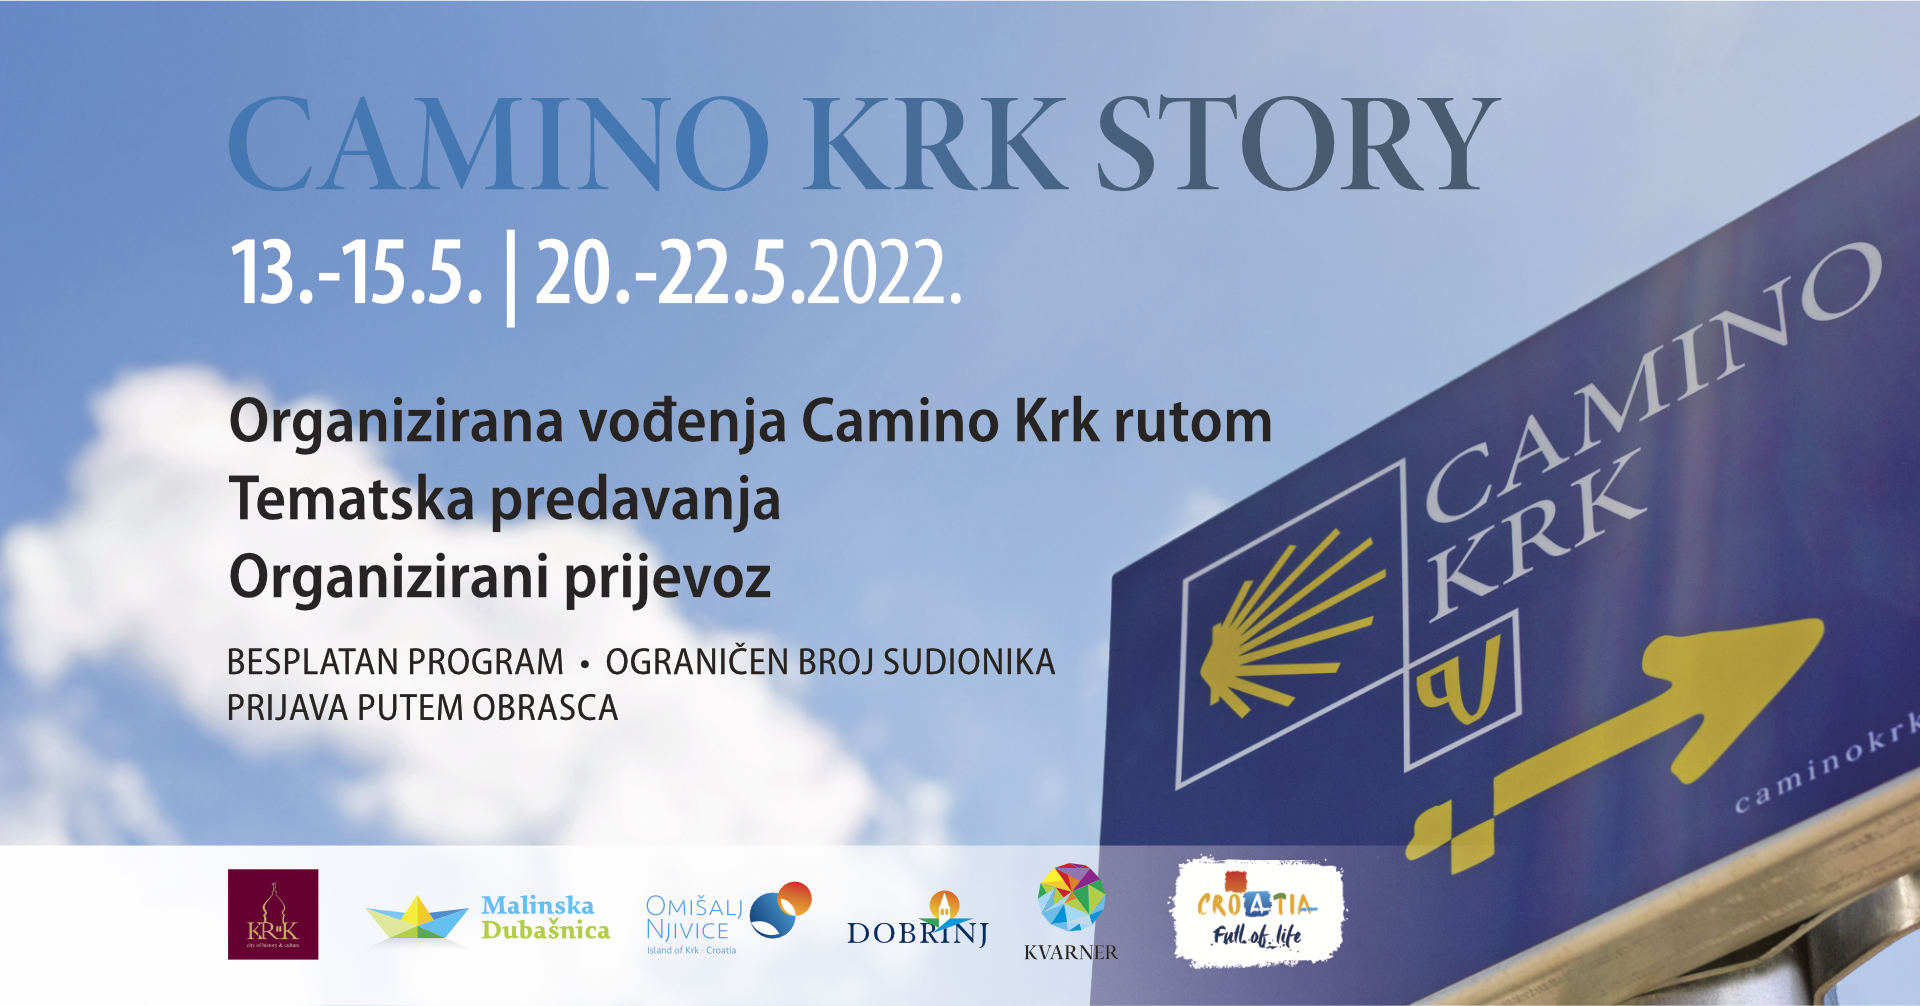 Camino Krk Story - Avtokampi.si